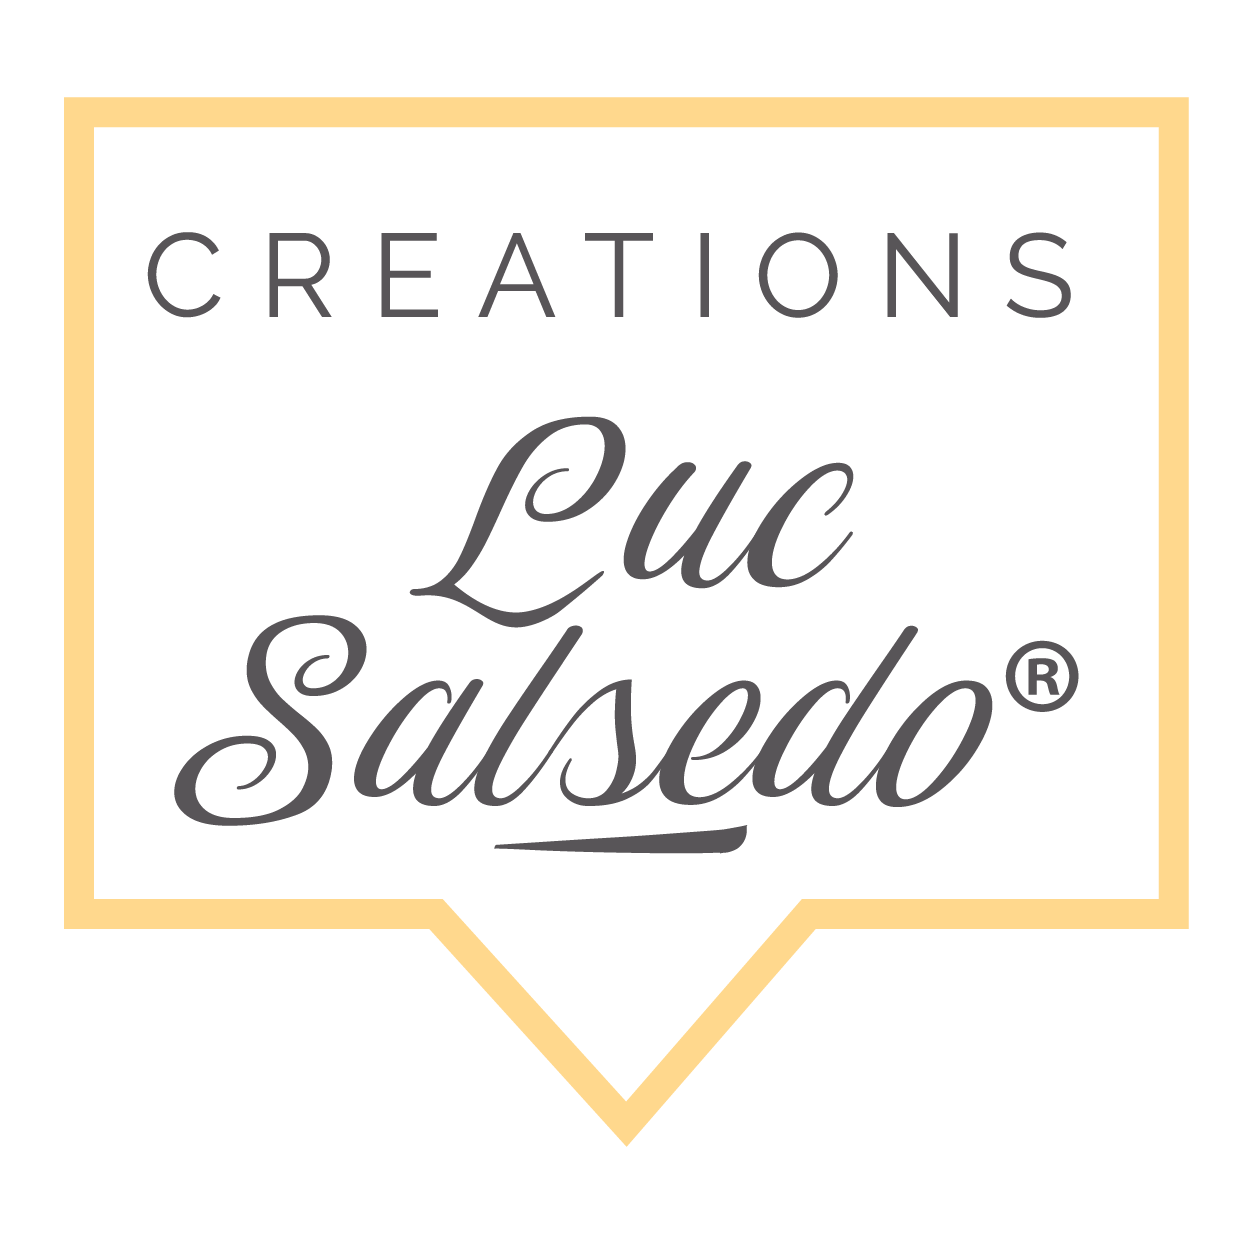 Création Luc Salsedo